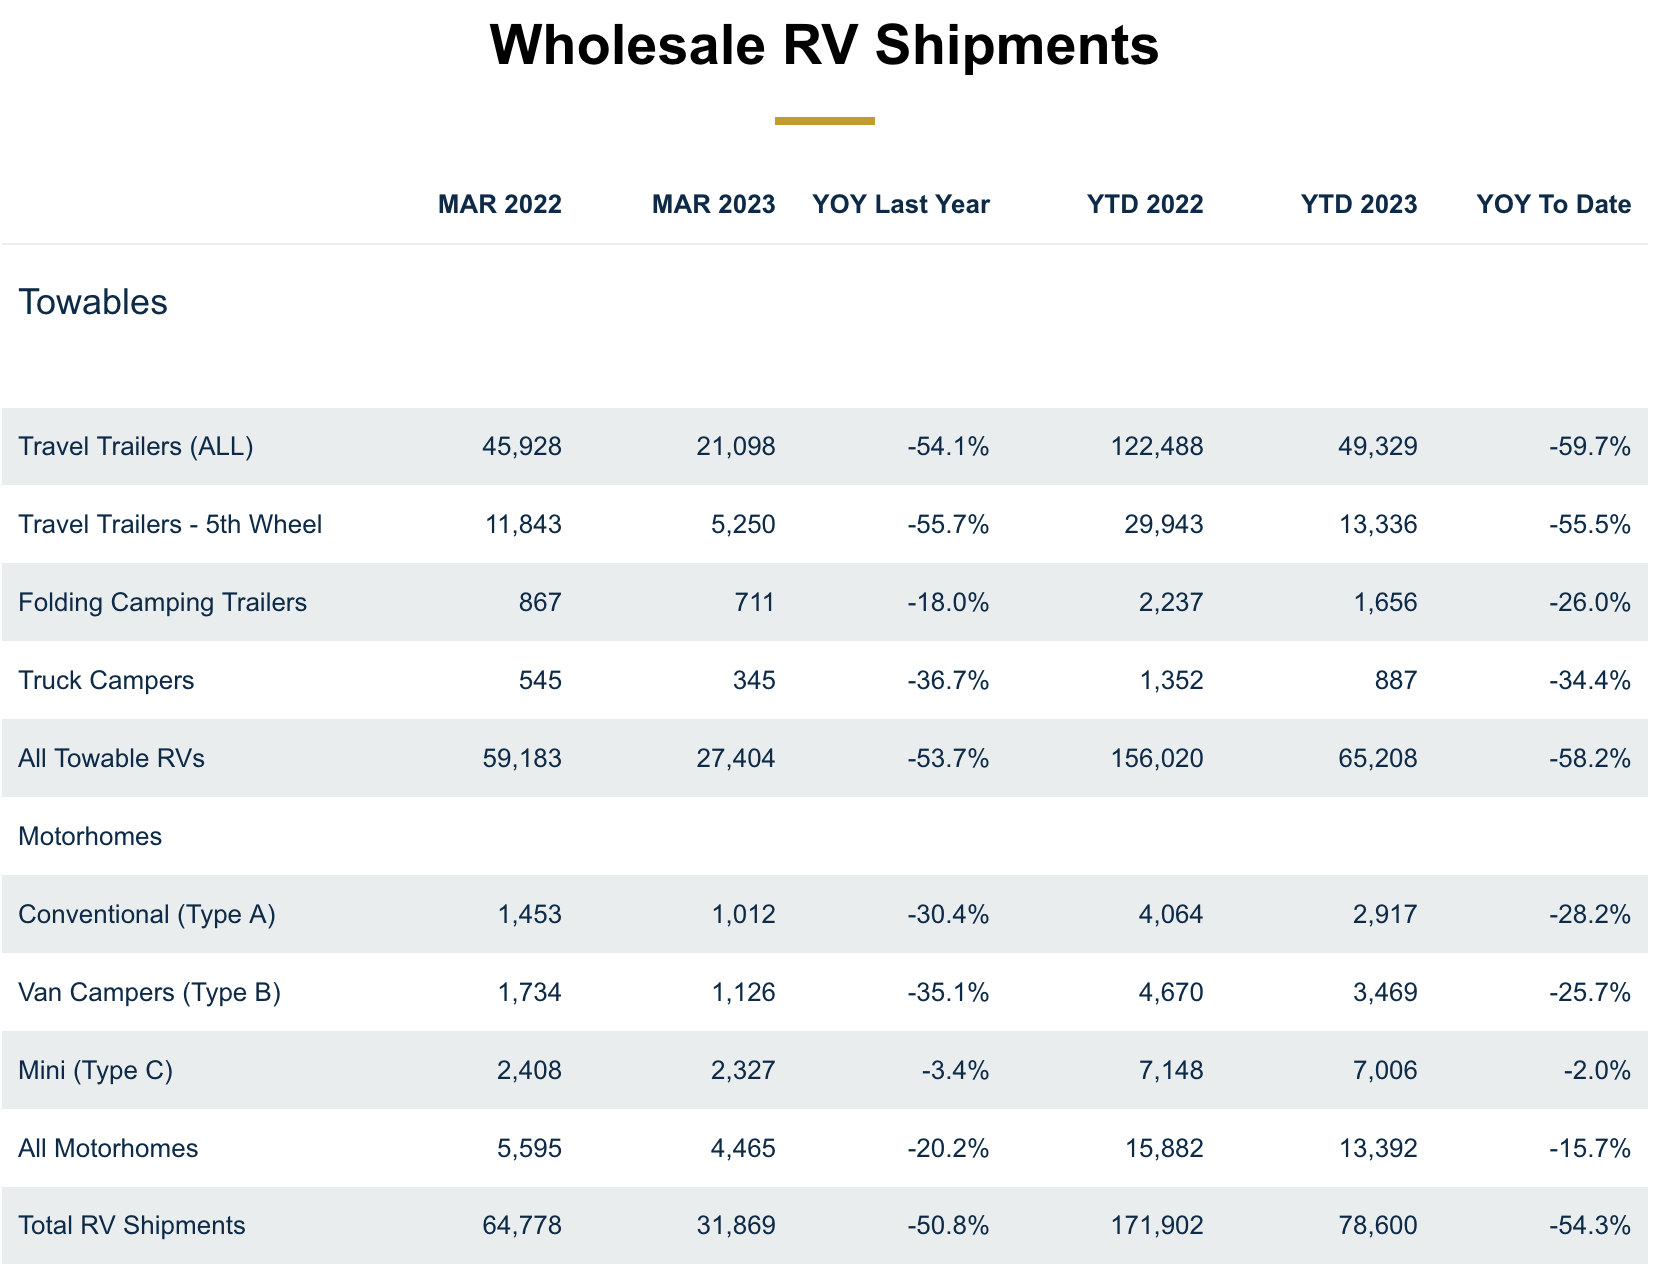 RVIA March Shipment Report Shows 50.8% Decrease